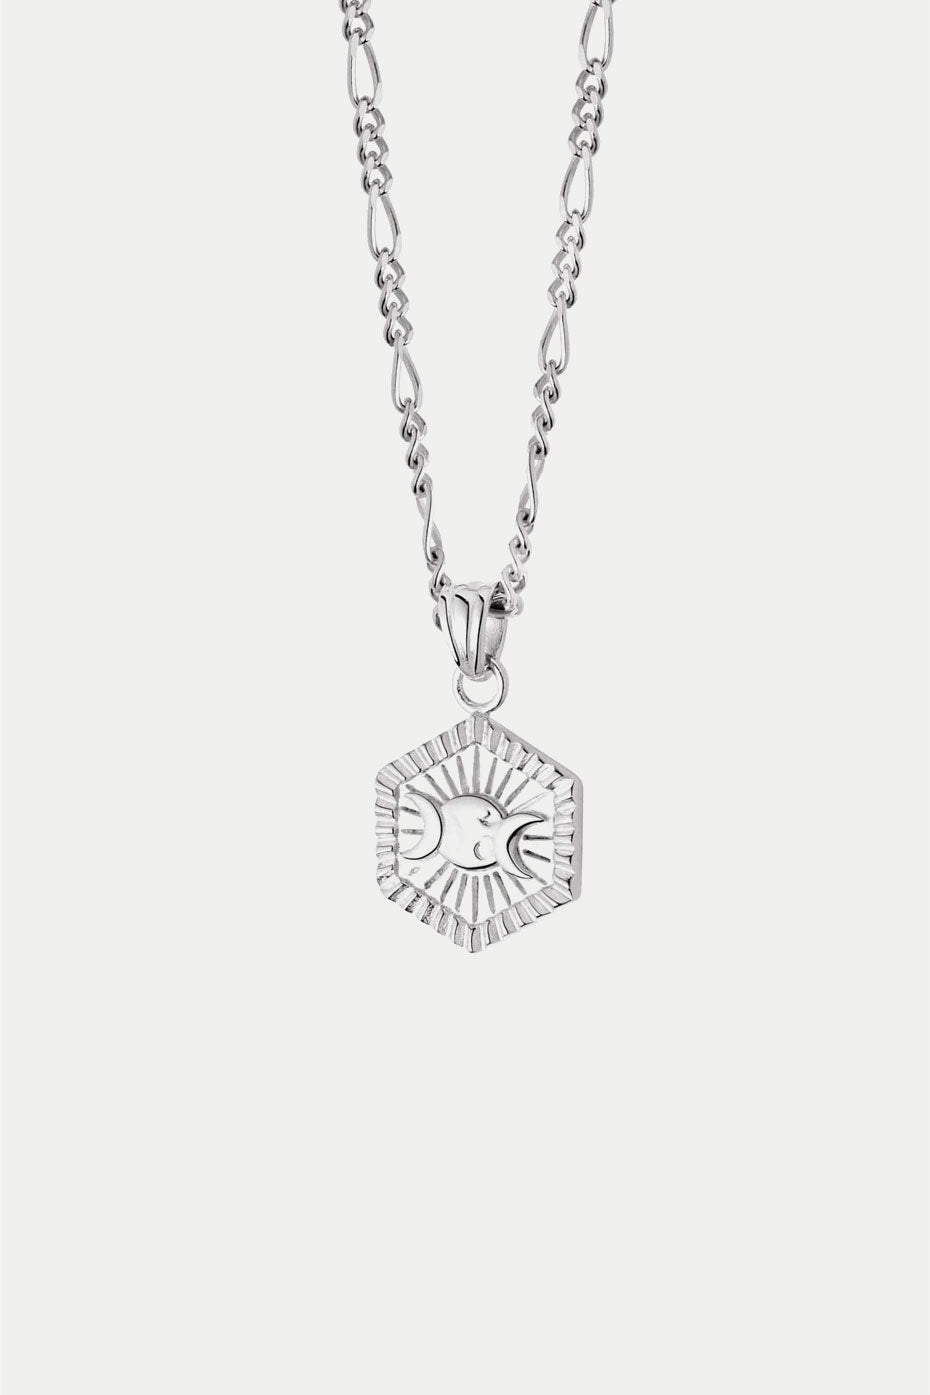 daisy-london-silver-estee-lalonde-goddess-hexagonal-necklace